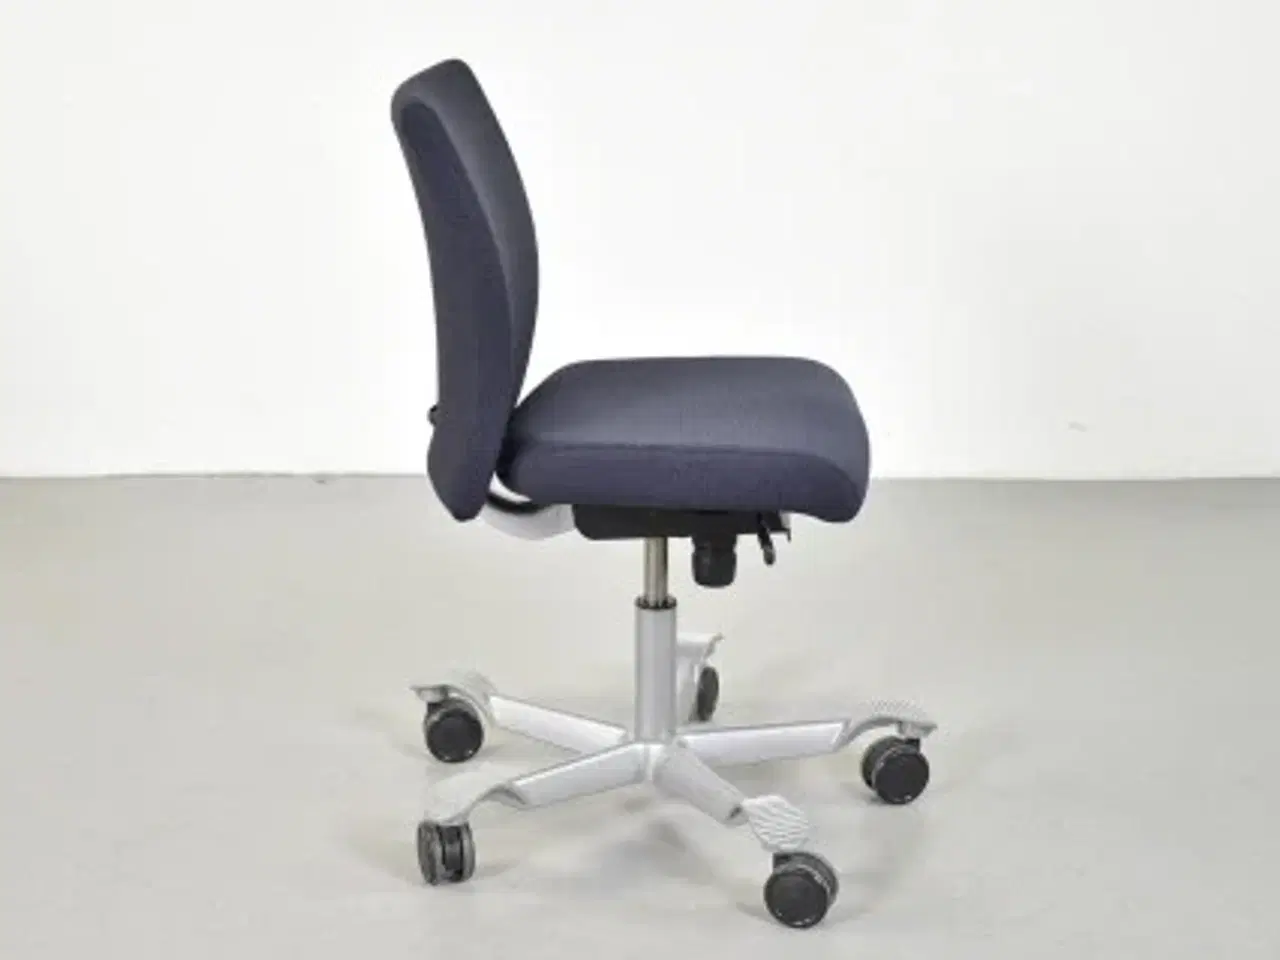 Billede 4 - Häg h04 credo 4200 kontorstol med sort/blå polster